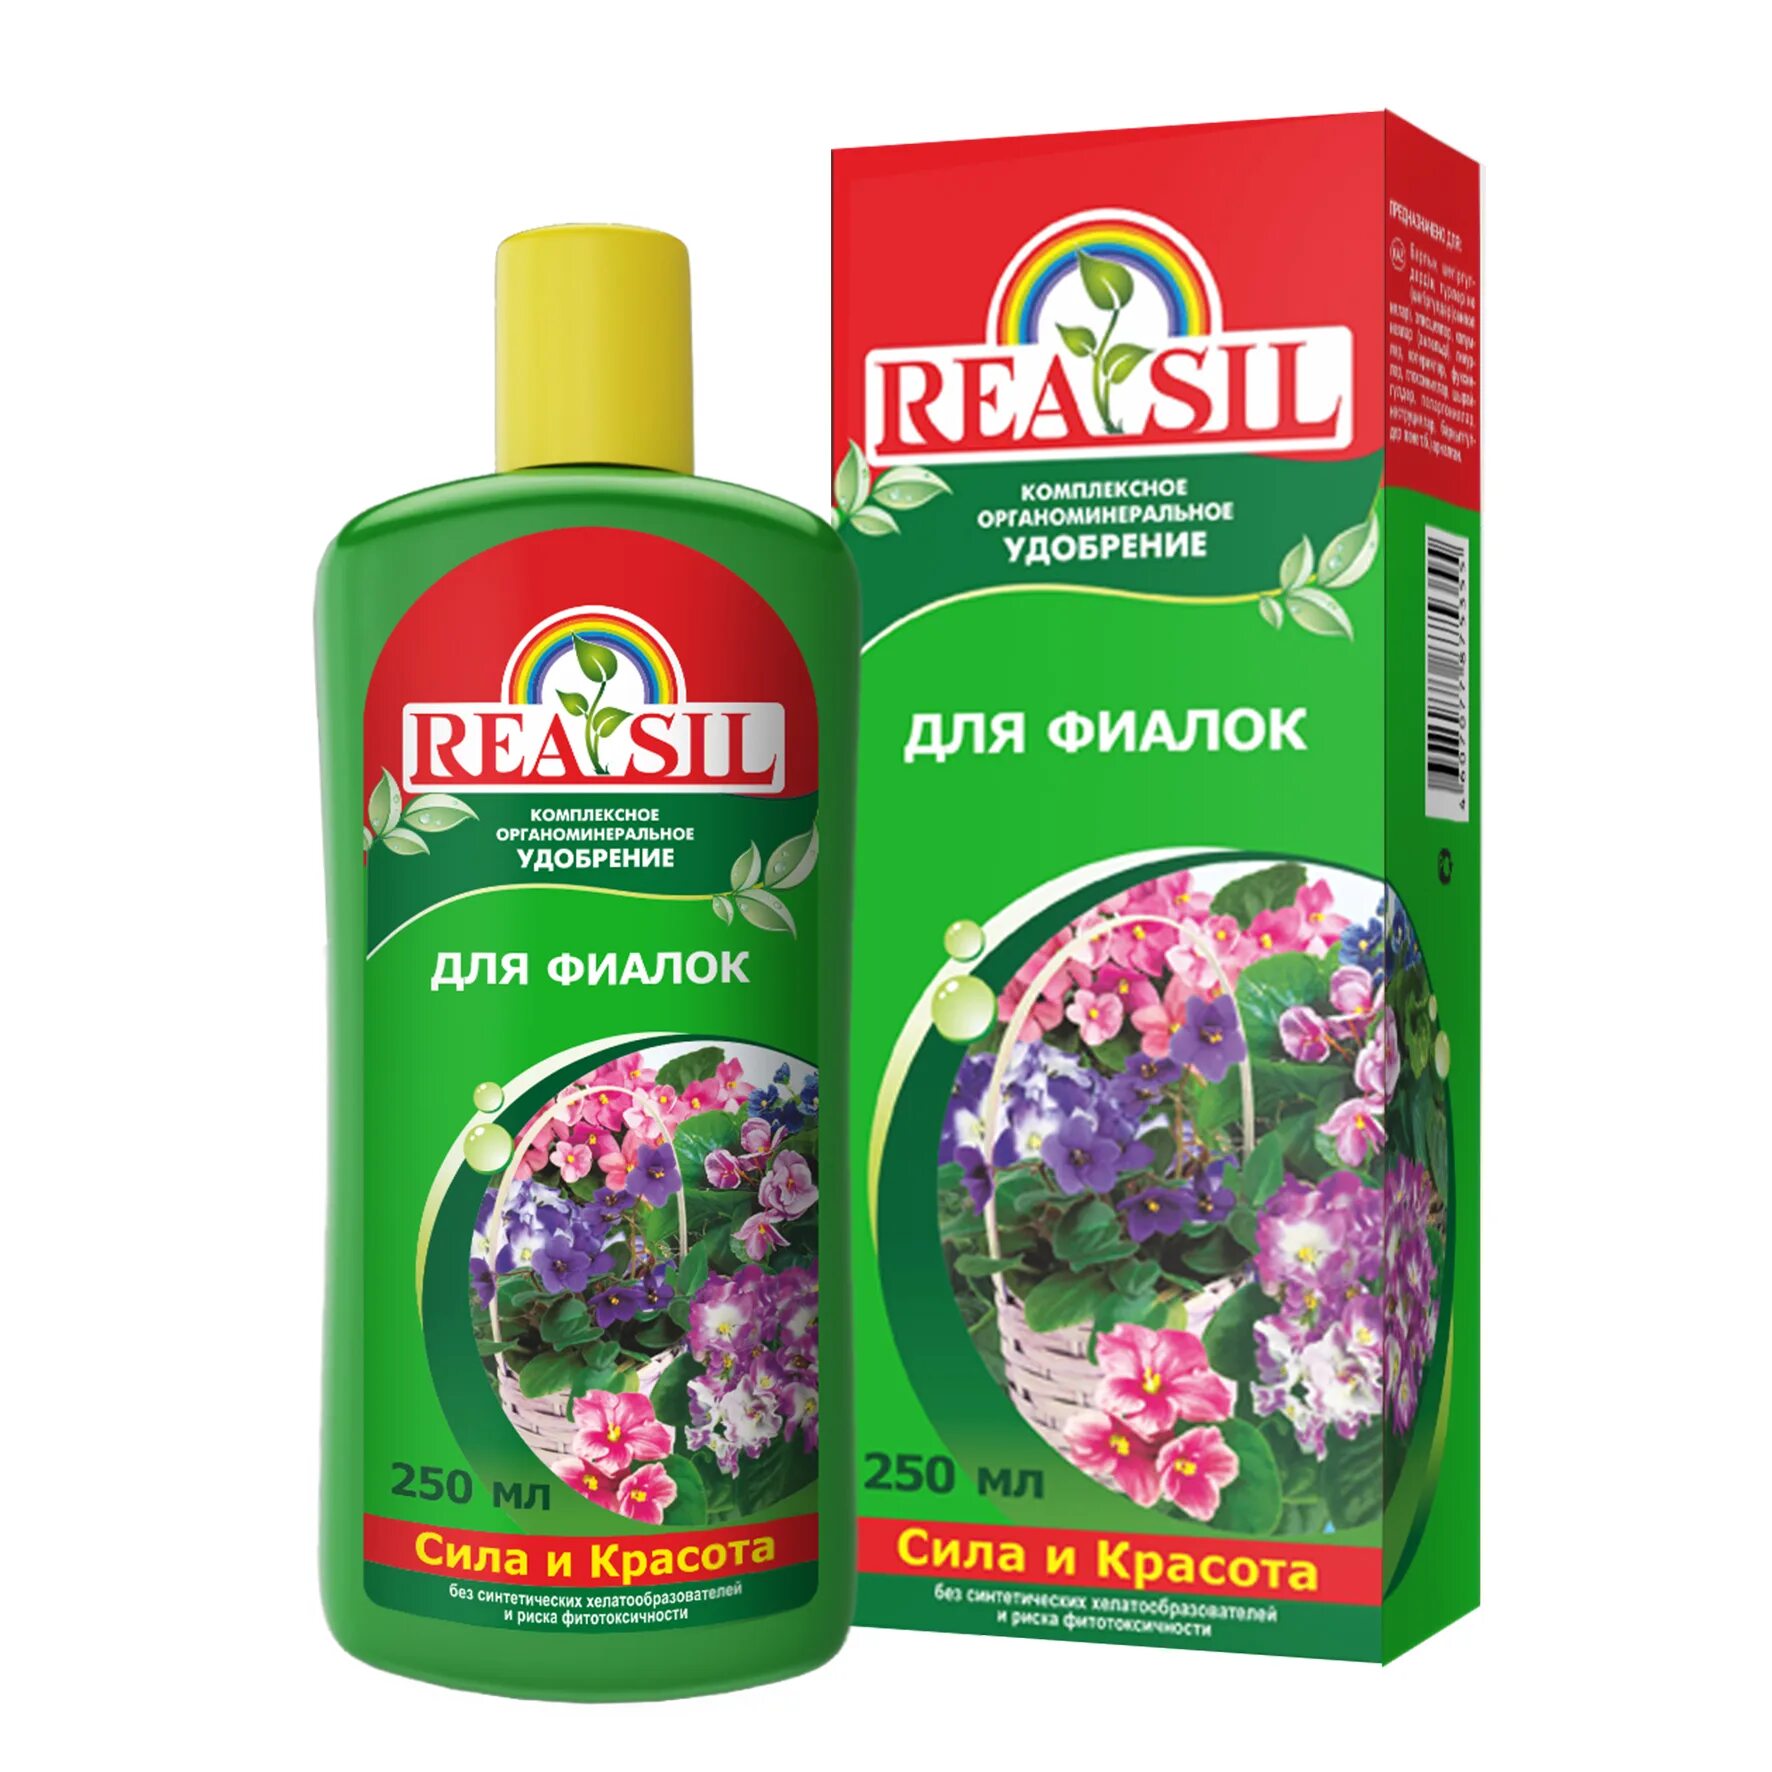 Название удобрения для цветов. Удобрение Reasil для роз 250мл. Удобрение для фиалок Reasil 0,25л. Реасил для хвойных растений 0,25. ASB Greenworld для роз.